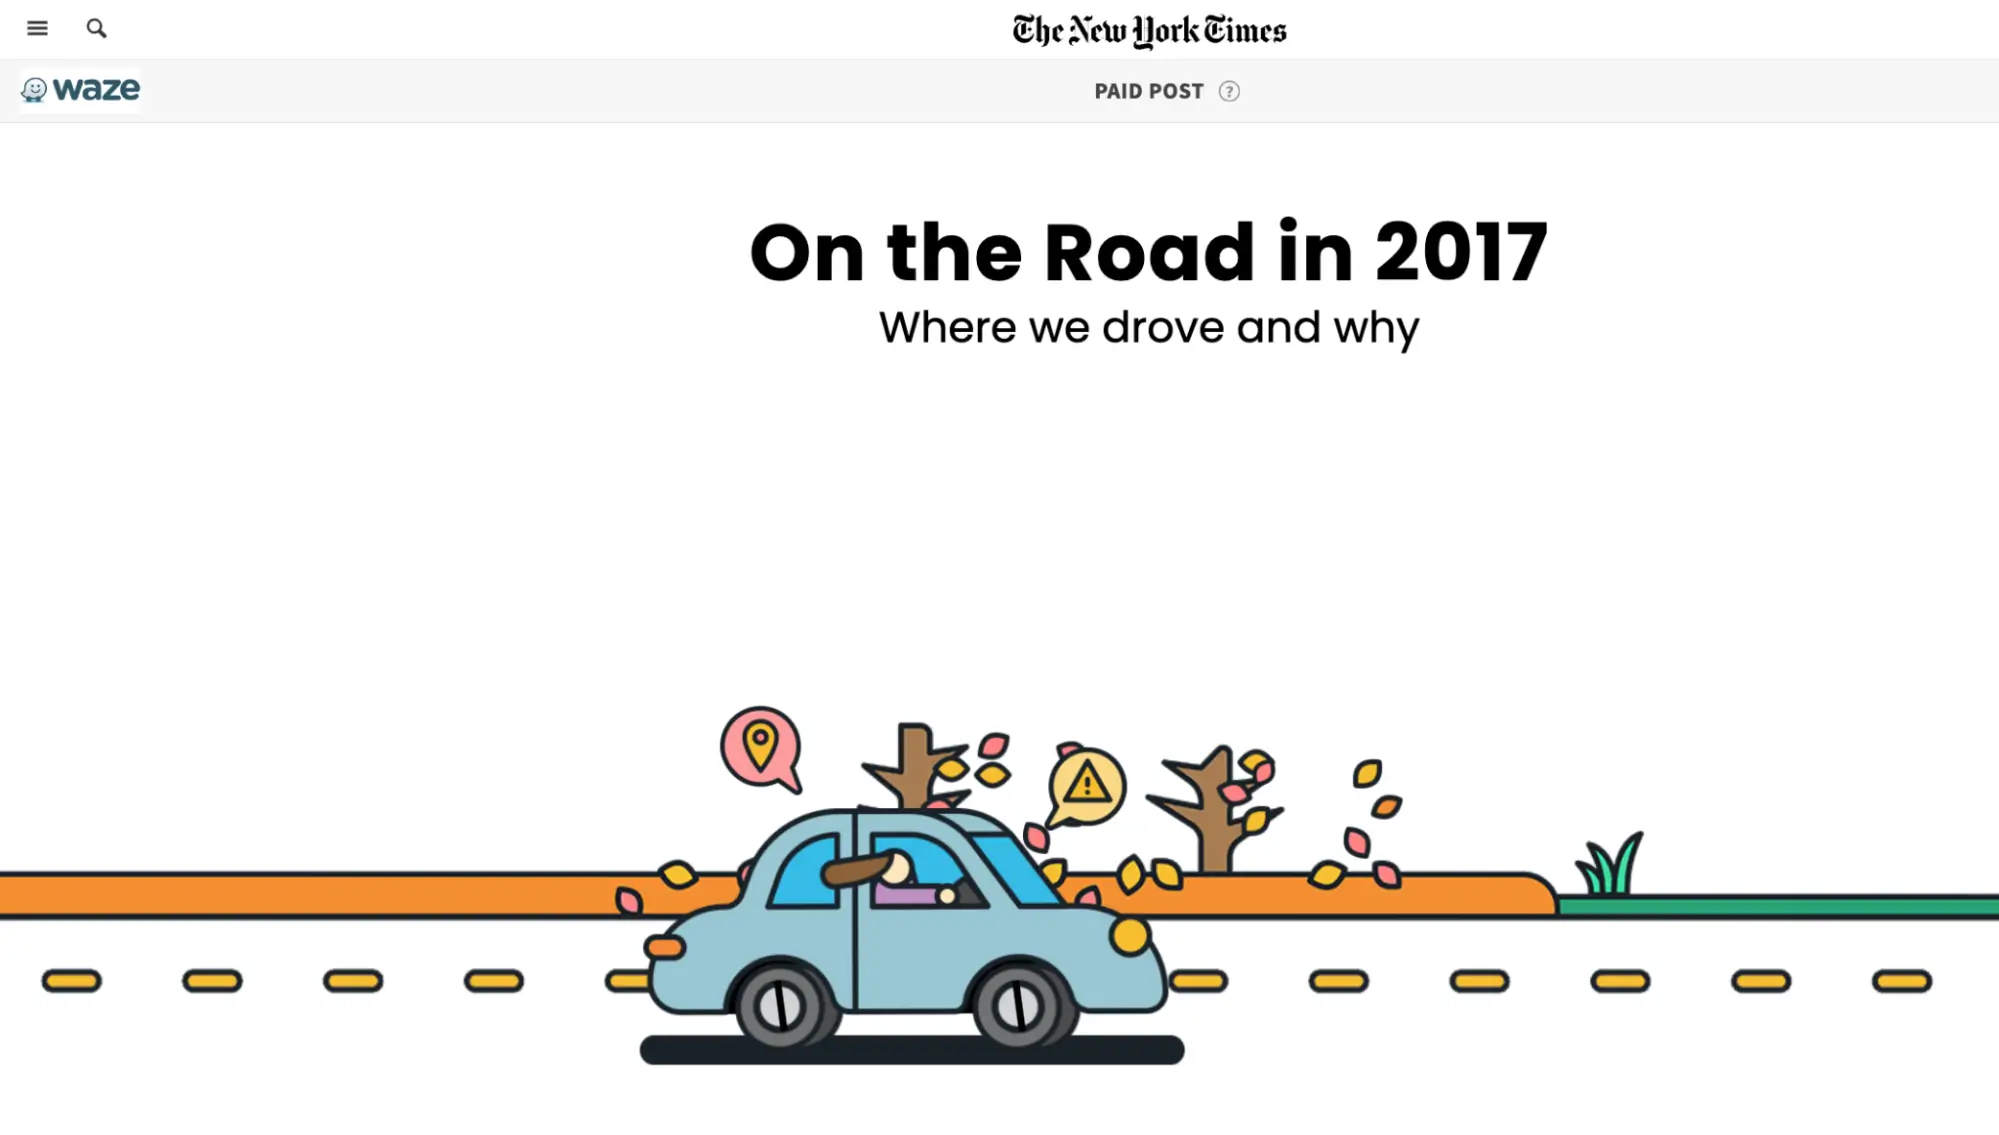 Această imagine arată campania „On the Road” a lui Waze, creată în parteneriat cu New York Times, cu conținut interactiv bazat pe date reale ale aplicației. Campania și-a propus să descopere tendințele de conducere și motivele din spatele acestora, oferind conținut informativ și care poate fi partajat printr-o pagină interactivă cu grafică captivantă.